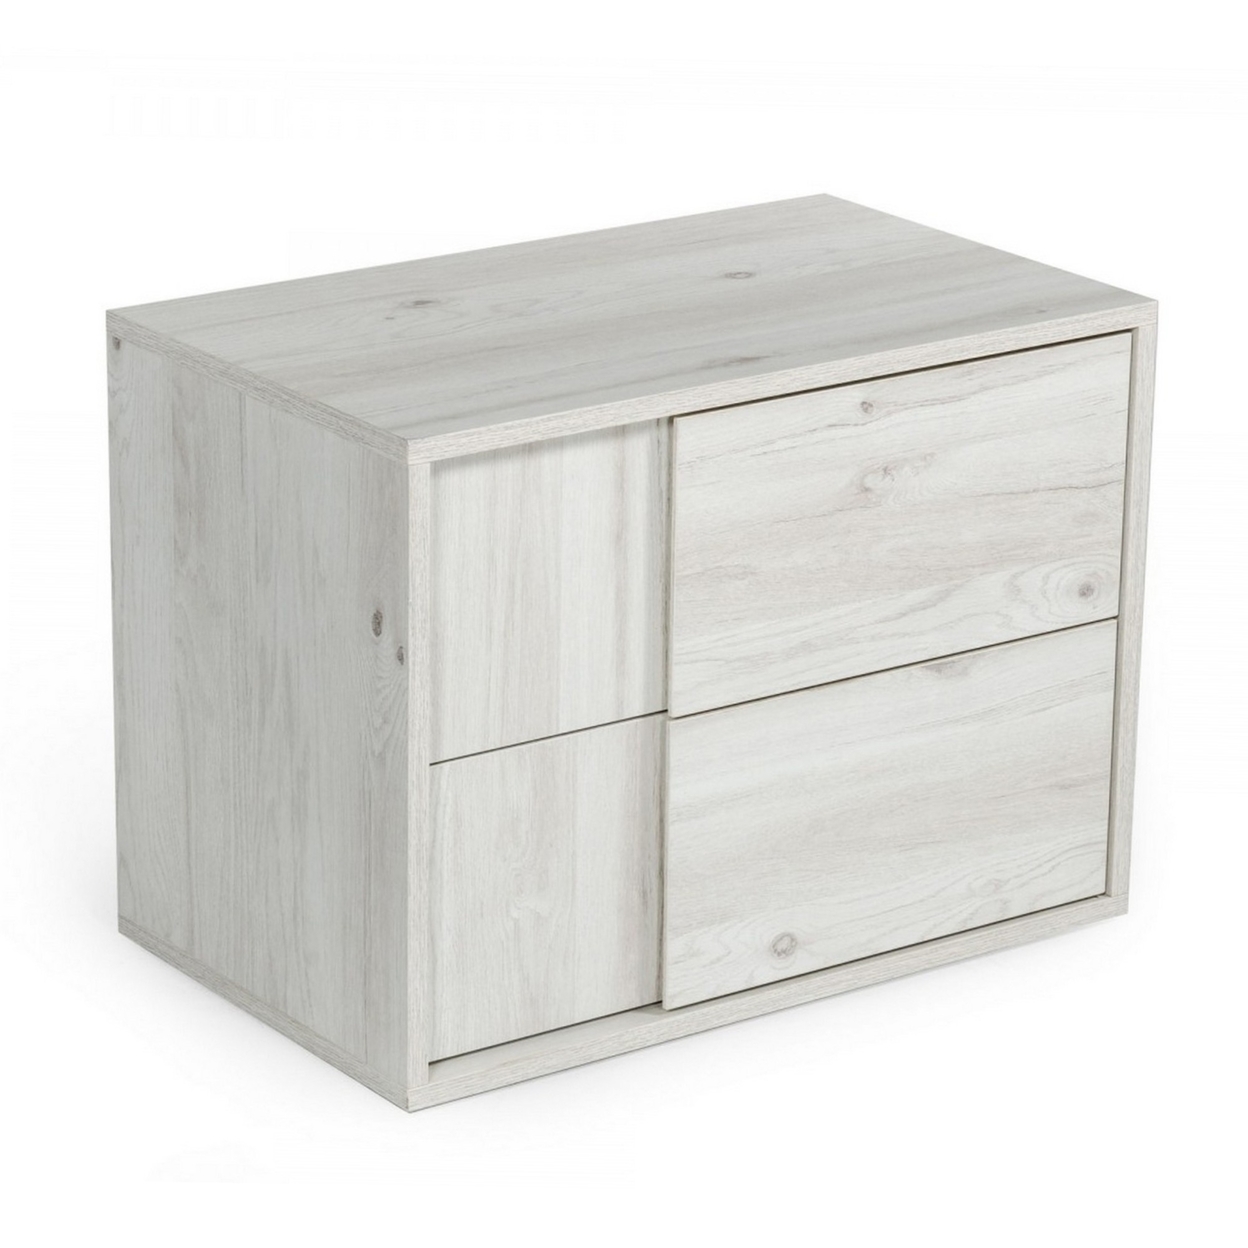 Wooden Nightstand With 2 Self Closing Drawers, White- Saltoro Sherpi